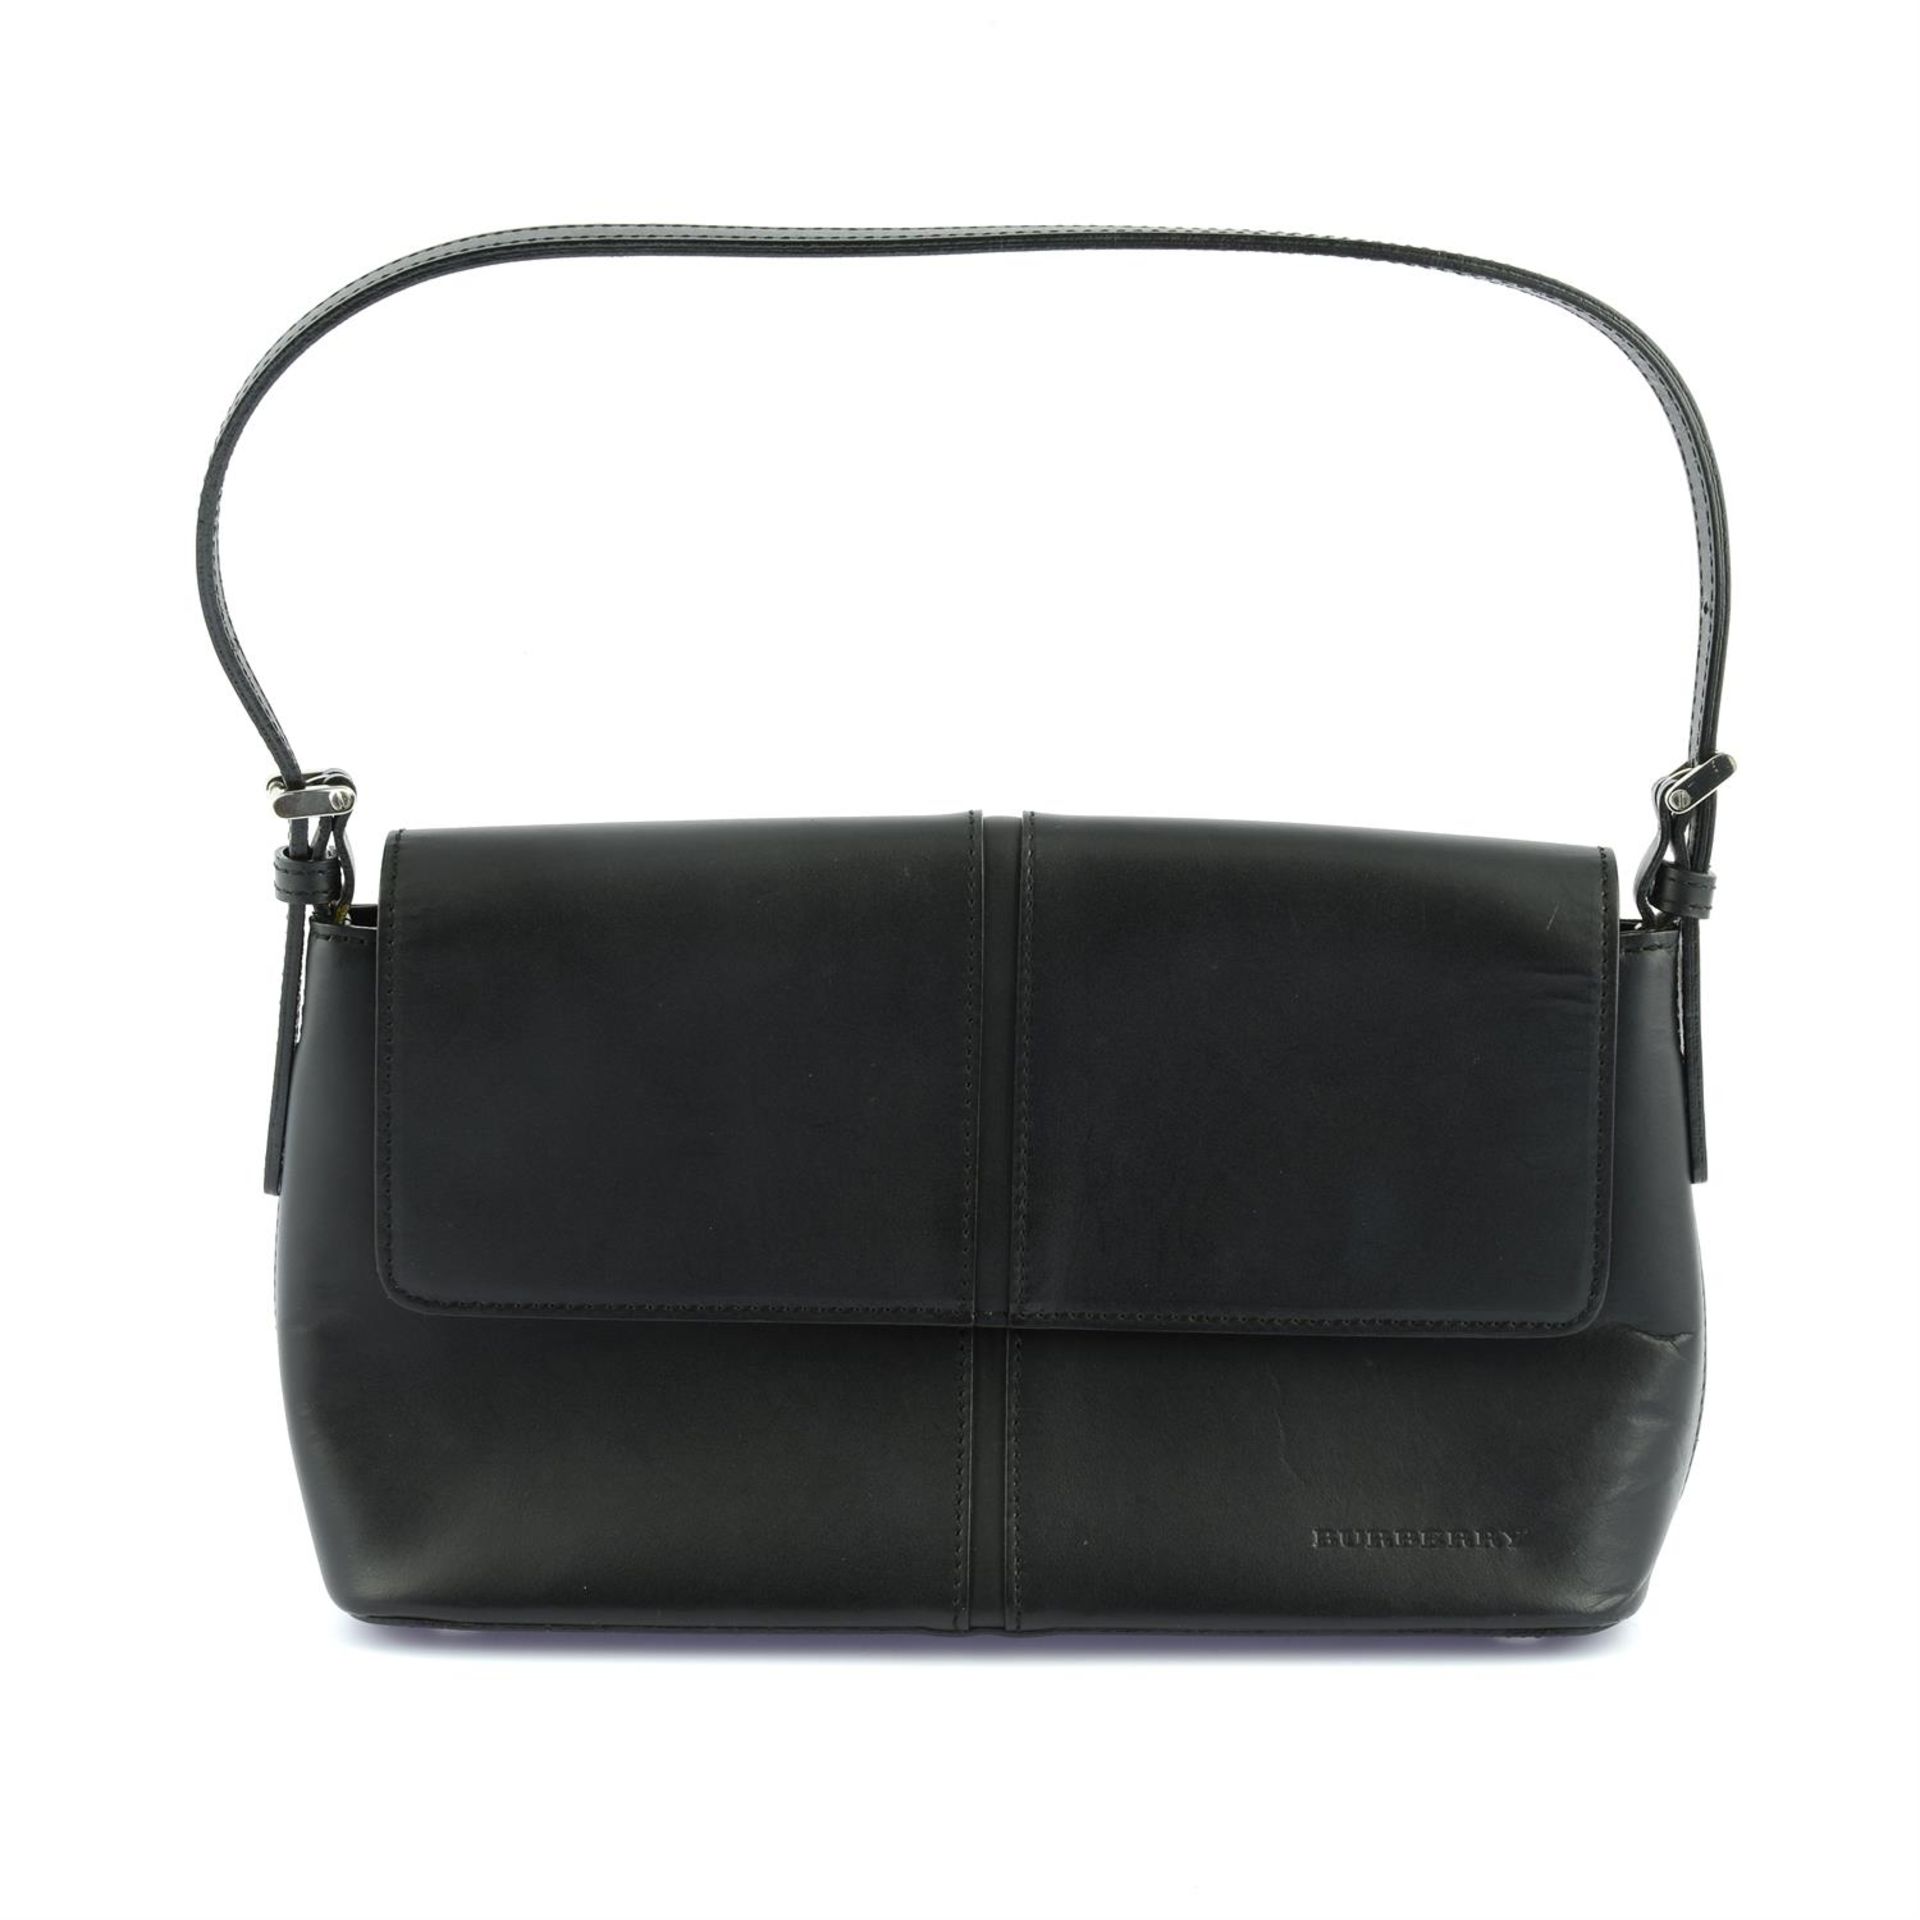 BURBERRY - a black leather rectangular shoulder flap bag.